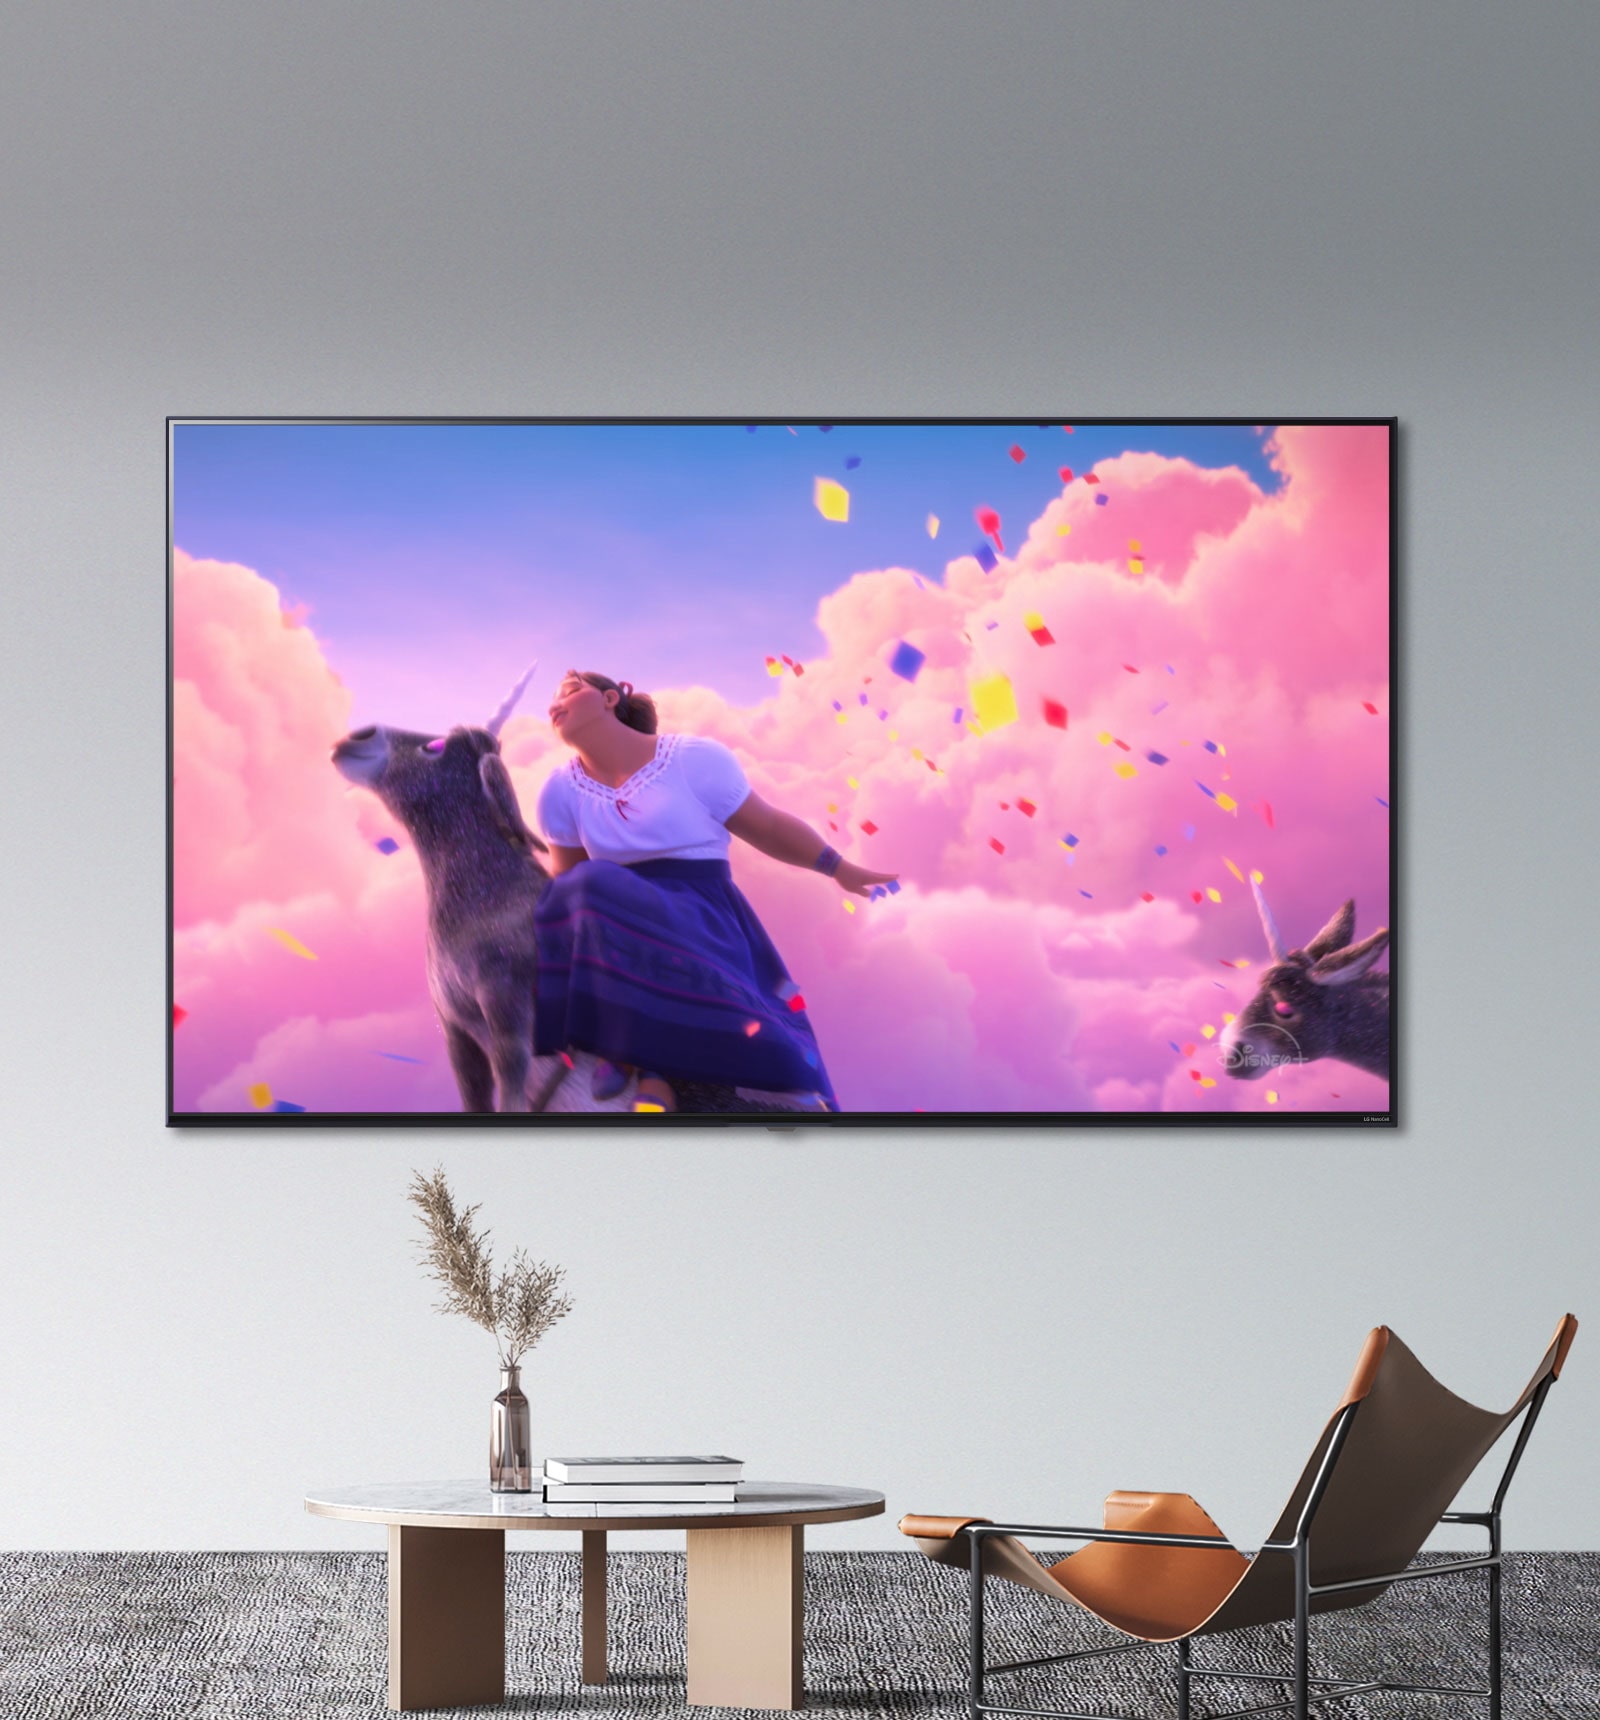 Scény z animovaného filmu společnosti Disney „Encanto" ukazují, jak jasné a živé barvy vám zprostředkuje televizor LG NanoCell.